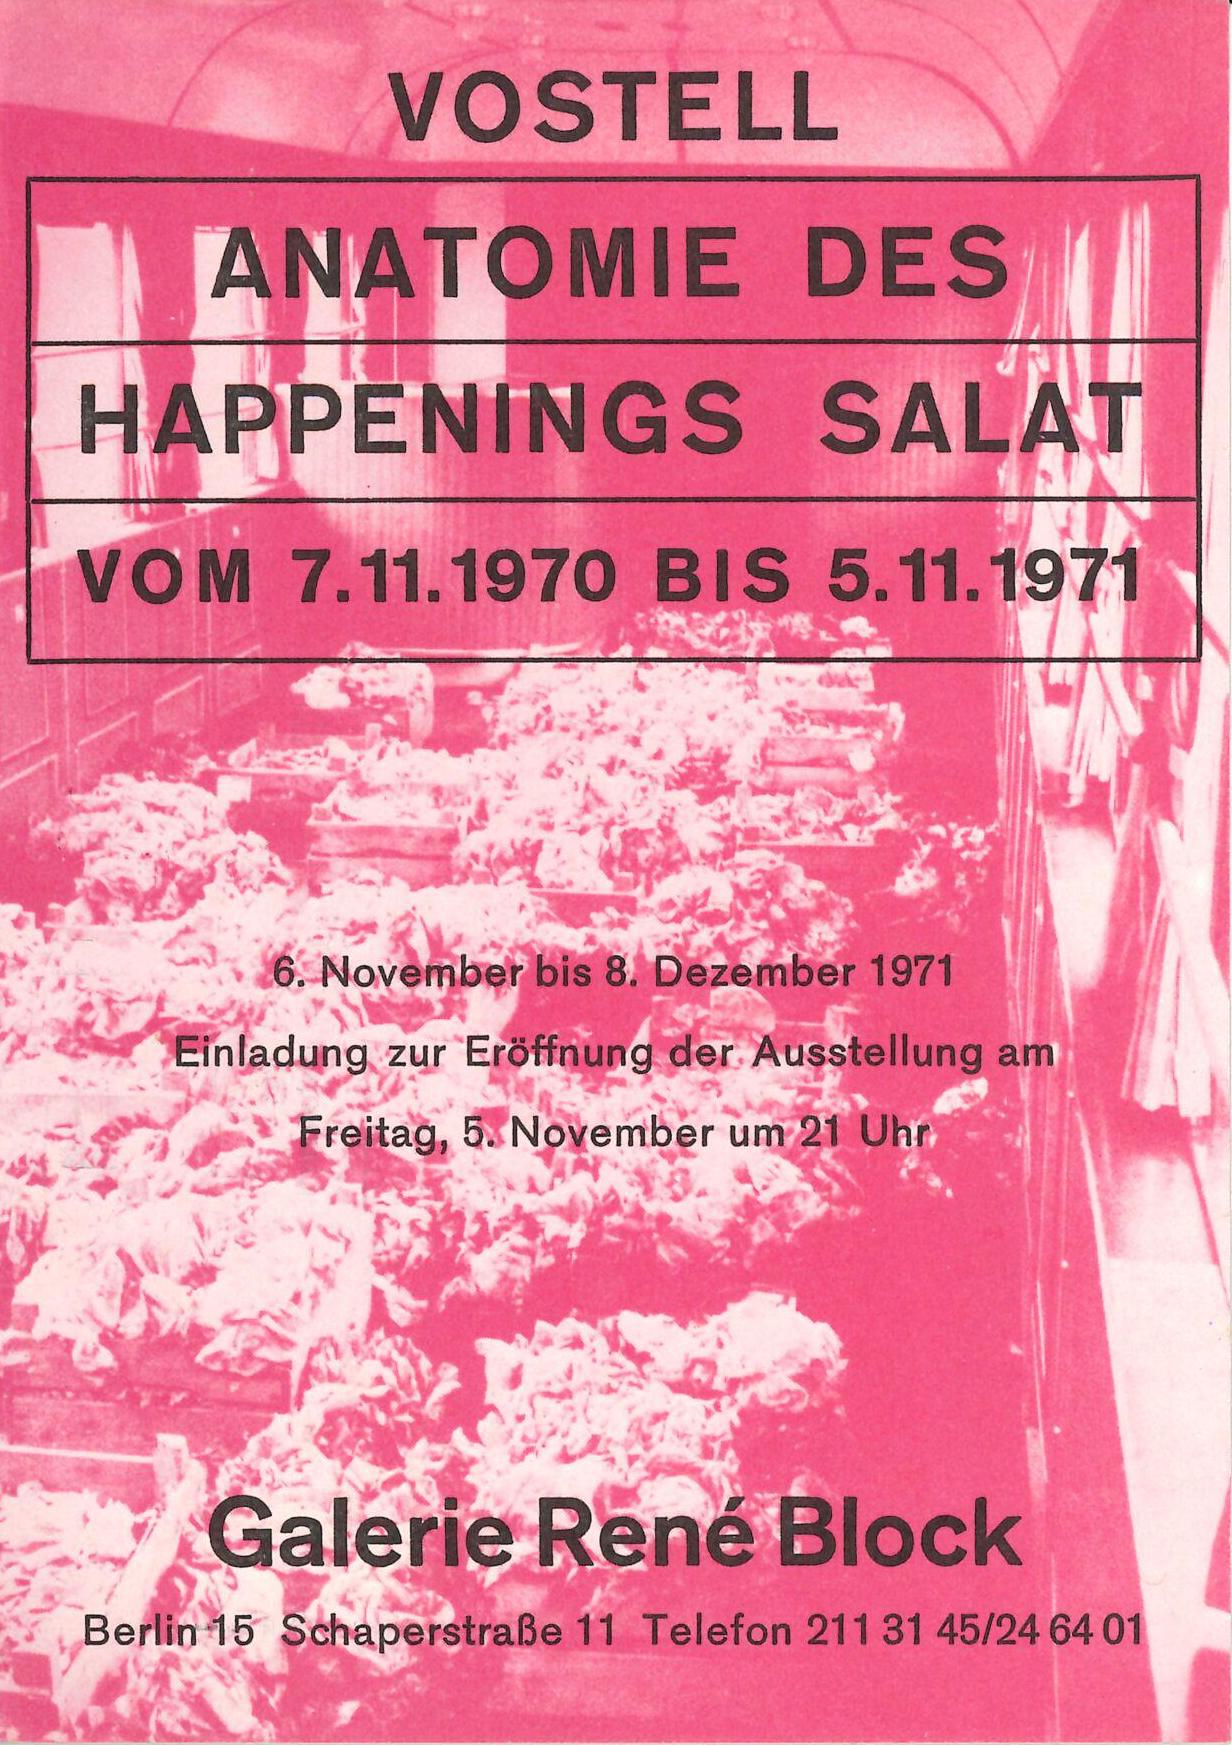 Wolf Vostell "Anatomie des Happenings Salat", Galerie René Block, Berlin 1971 (Invitation);  Archiv der Avantgarden, Staatliche Kunstsammlungen Dresden © VG Bild-Kunst, Bonn